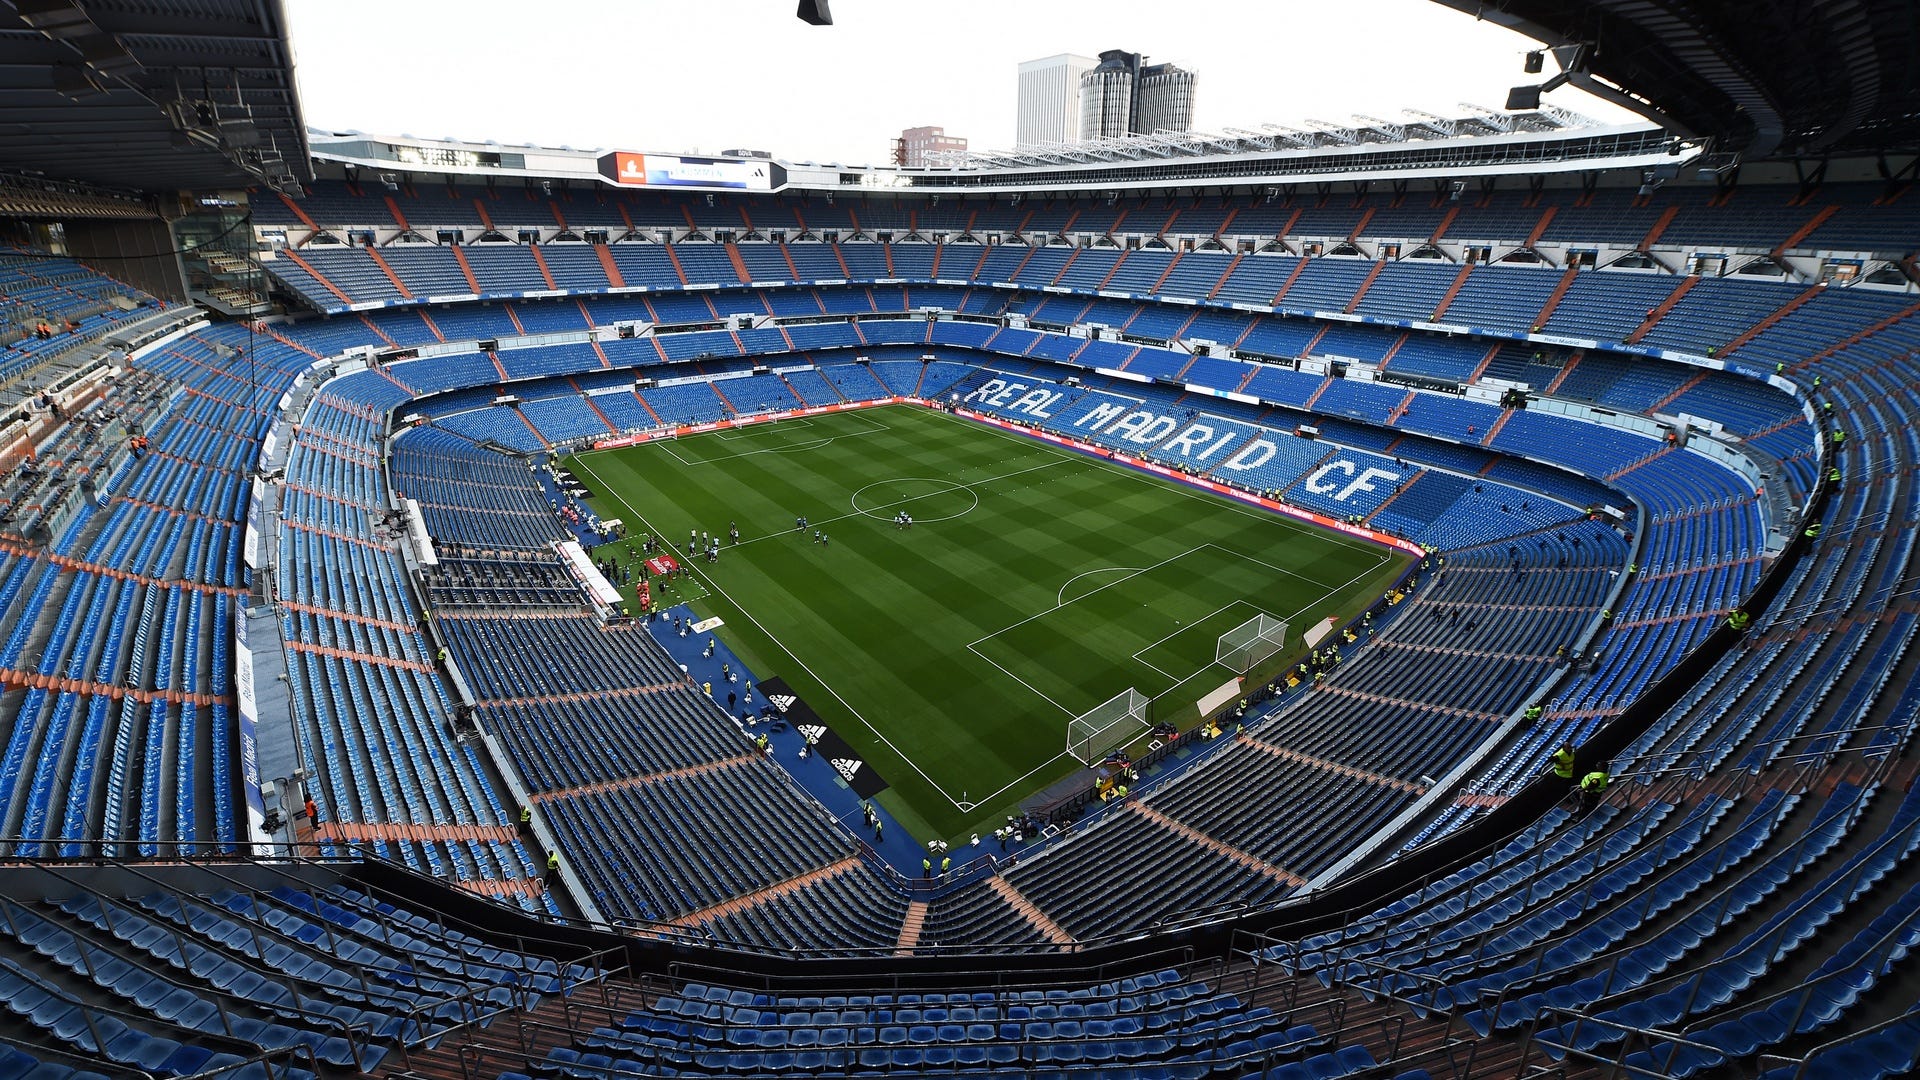 Real Madrid cải tạo sân Bernabeu, xây riêng một khu vực cho eSports | Goal.com Việt Nam